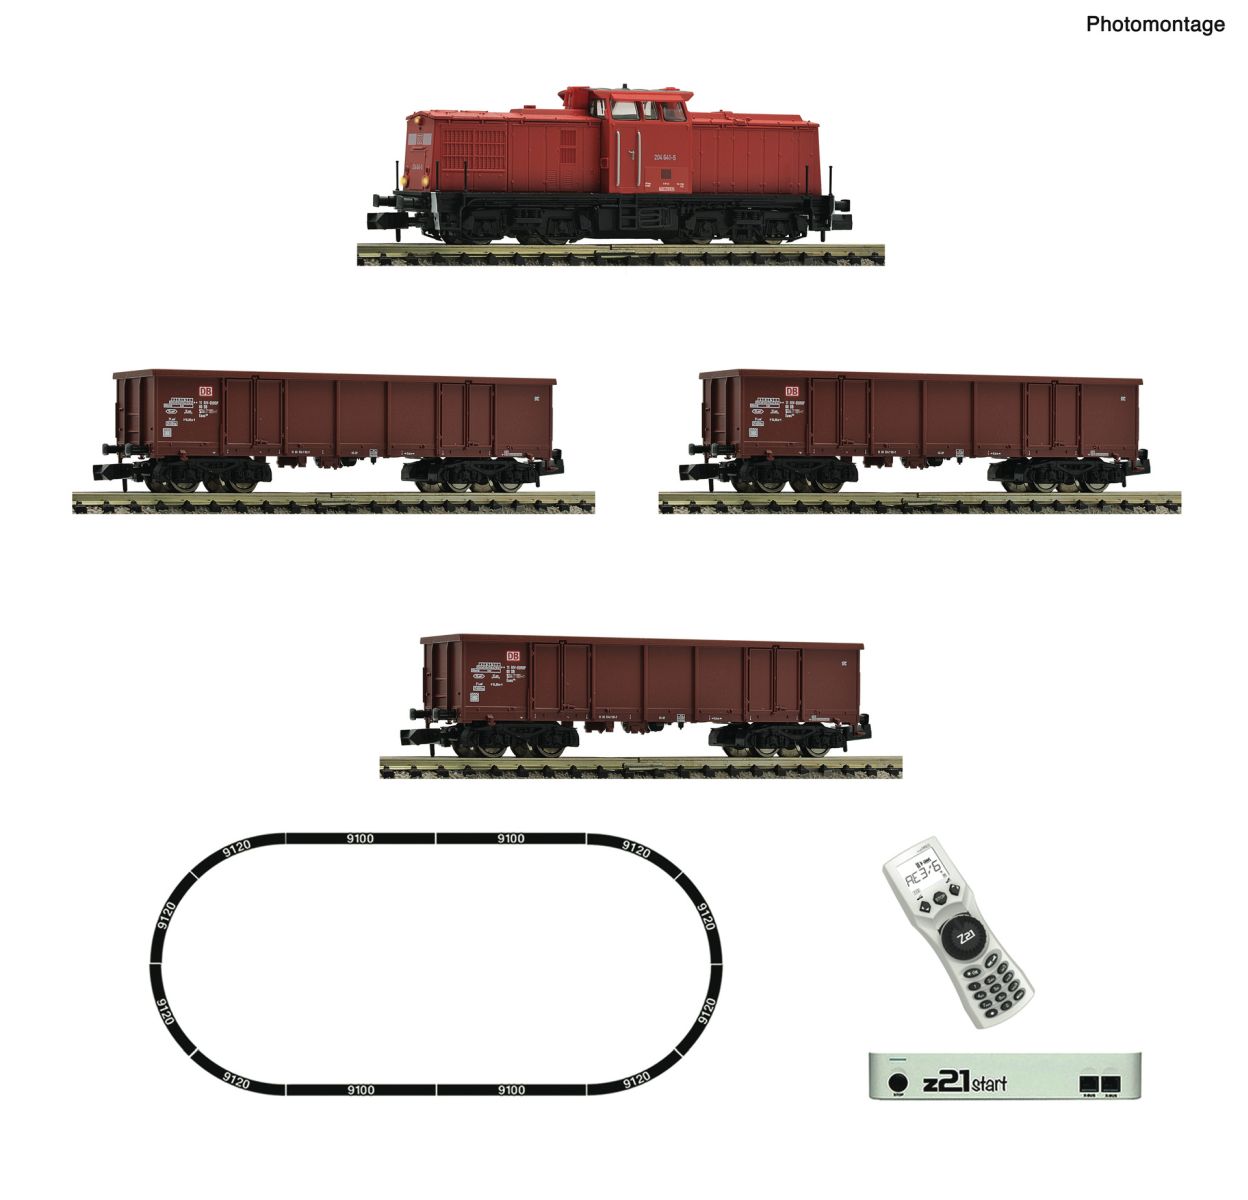 Fleischmann 5170005 - Digitales Startset mit BR 204 und Güterzug, DBAG, Ep.V-VI, z21start